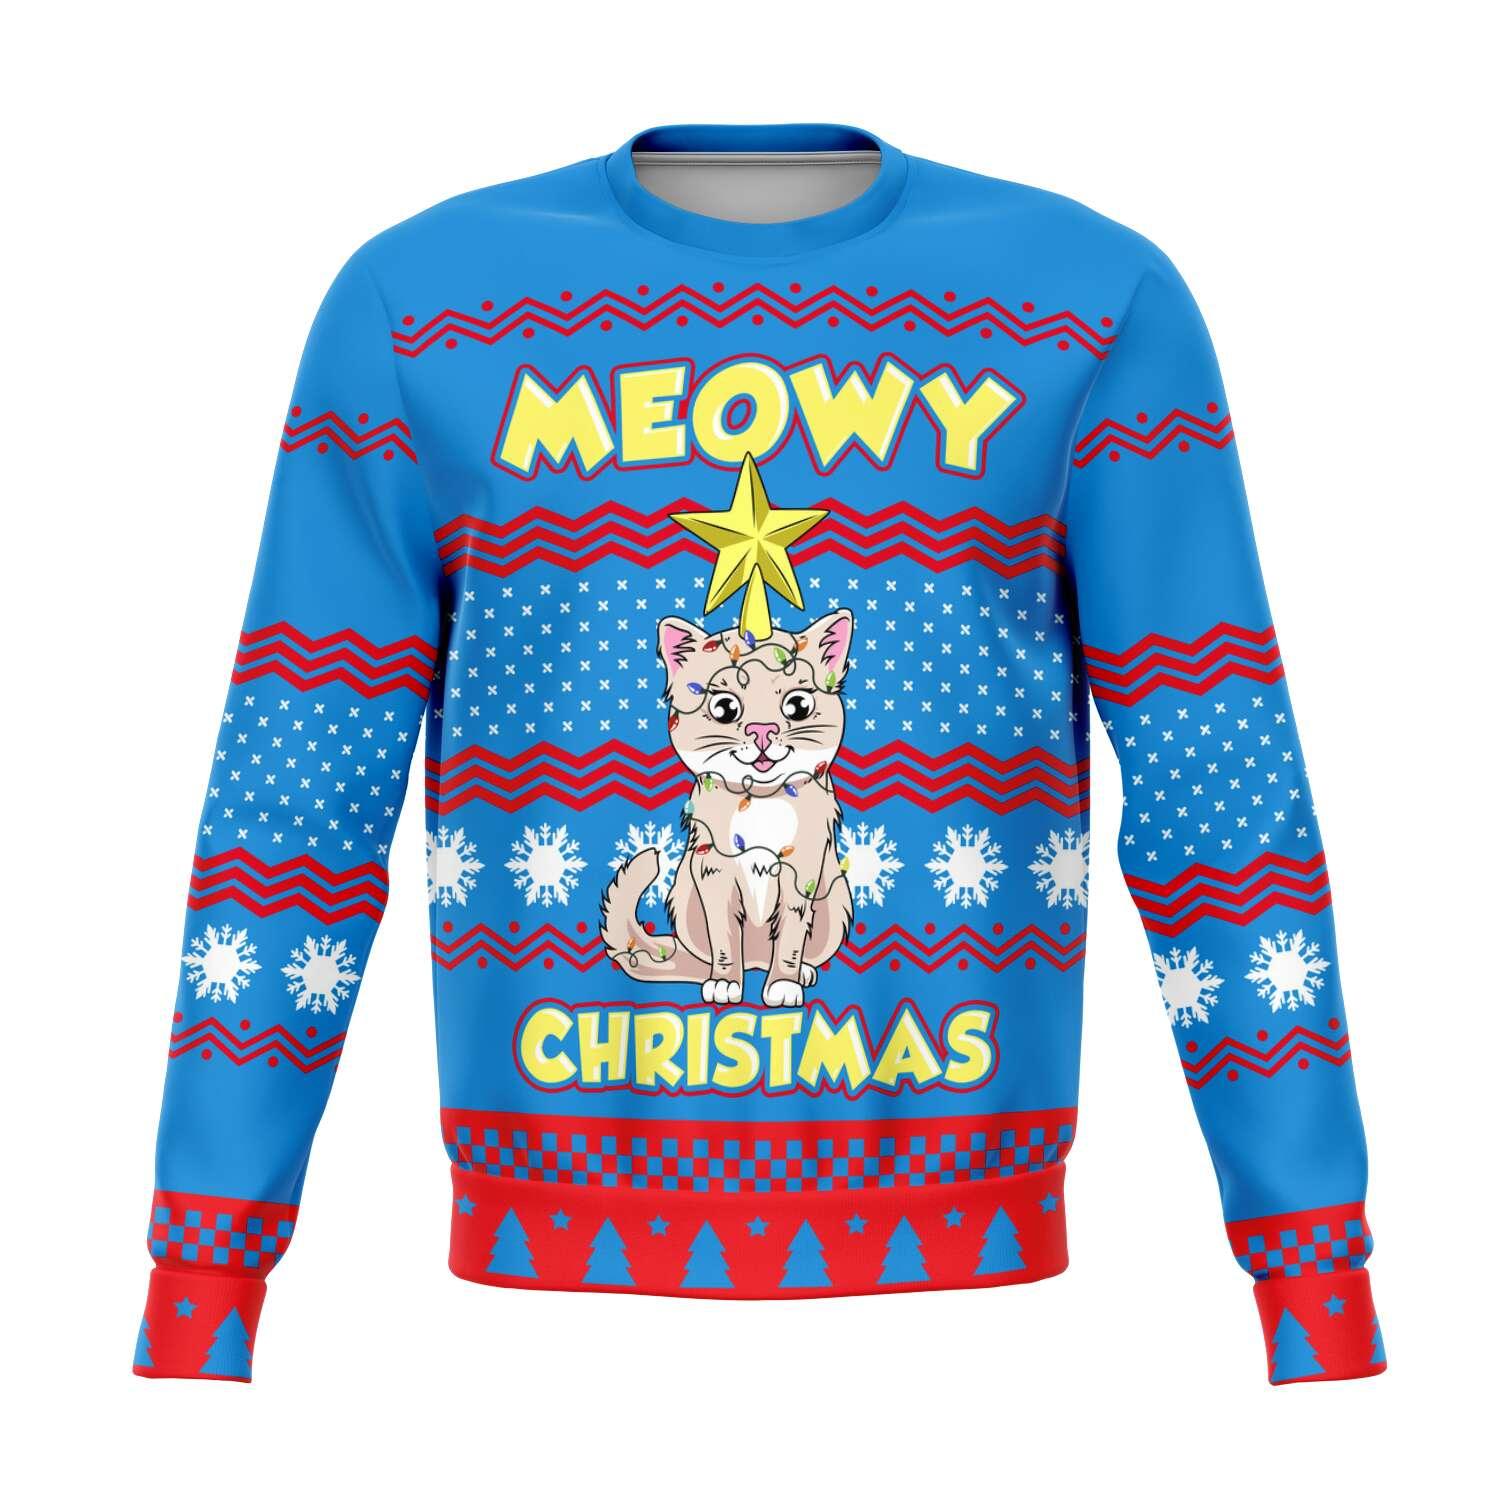 Meowy Christmas Unisex Ugly Christmas Sweatshirt